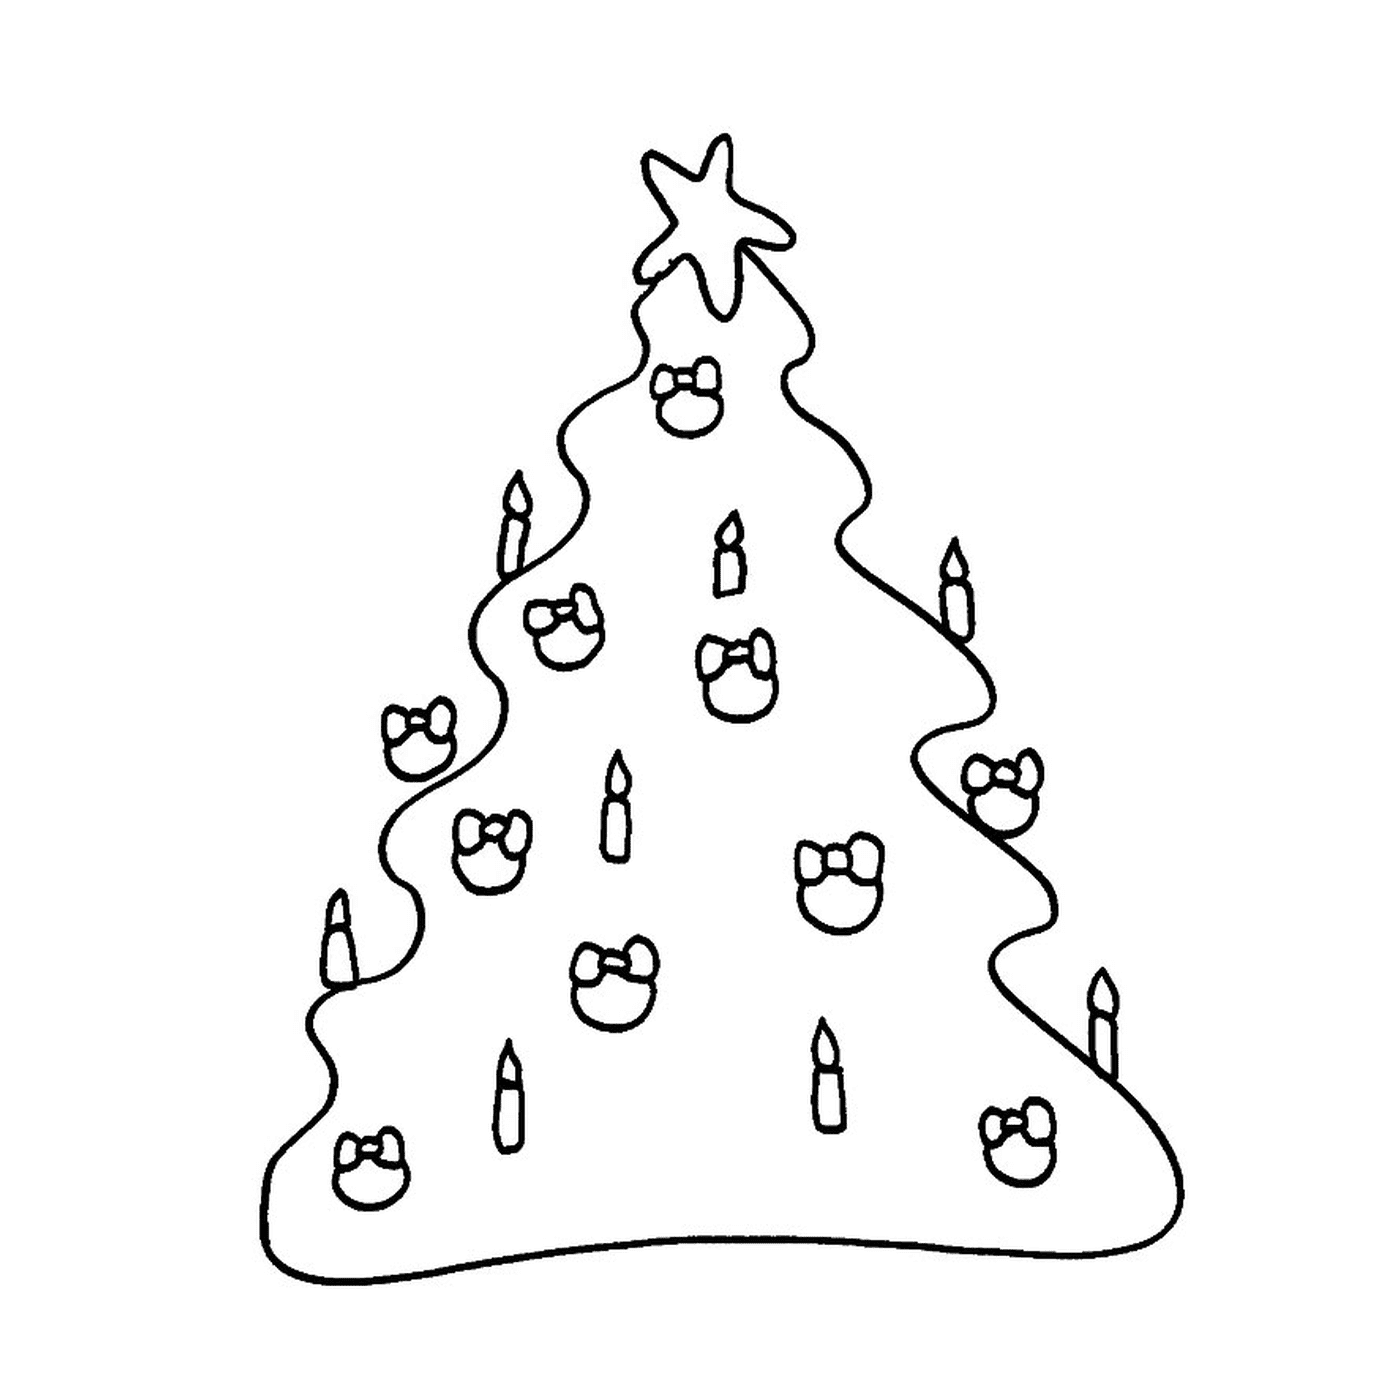  मोमबत्ती के साथ क्रिसमस के पेड़ 